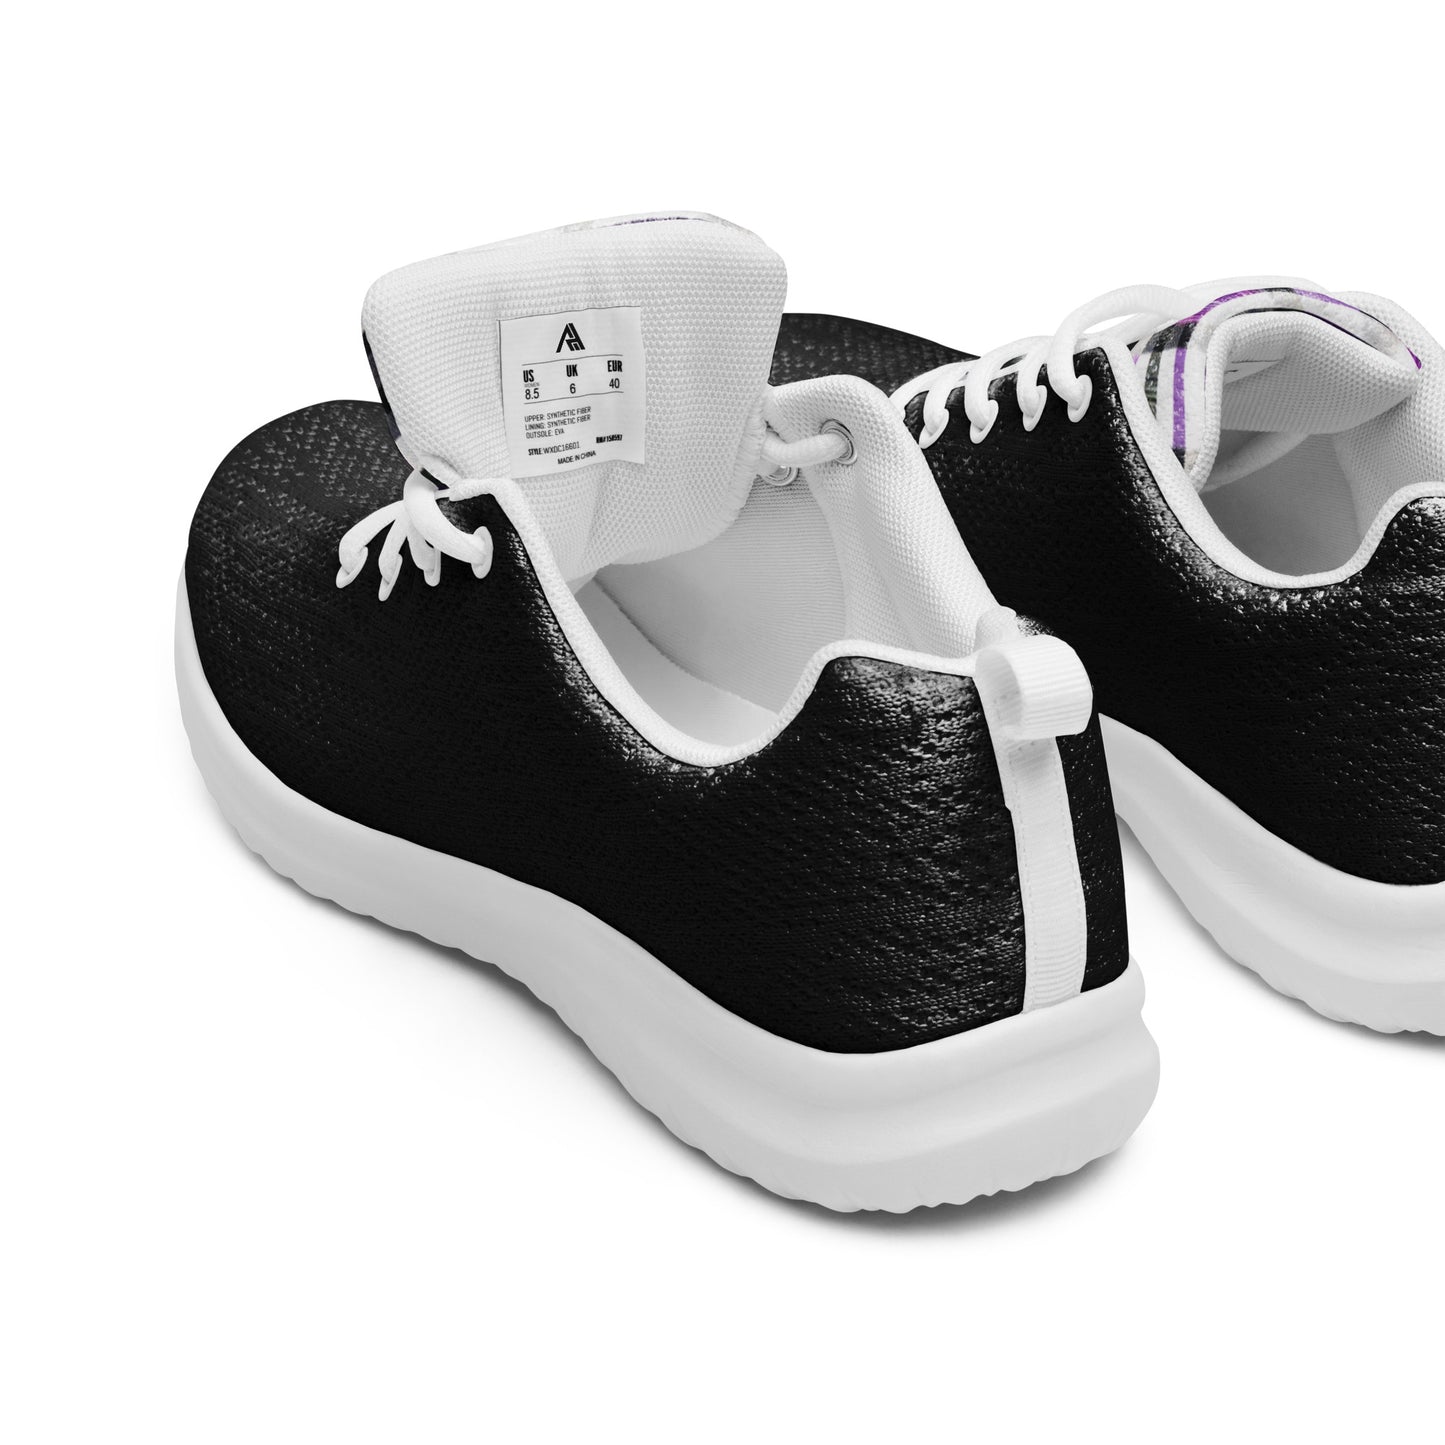 Men’s Sport Shoes - Concept